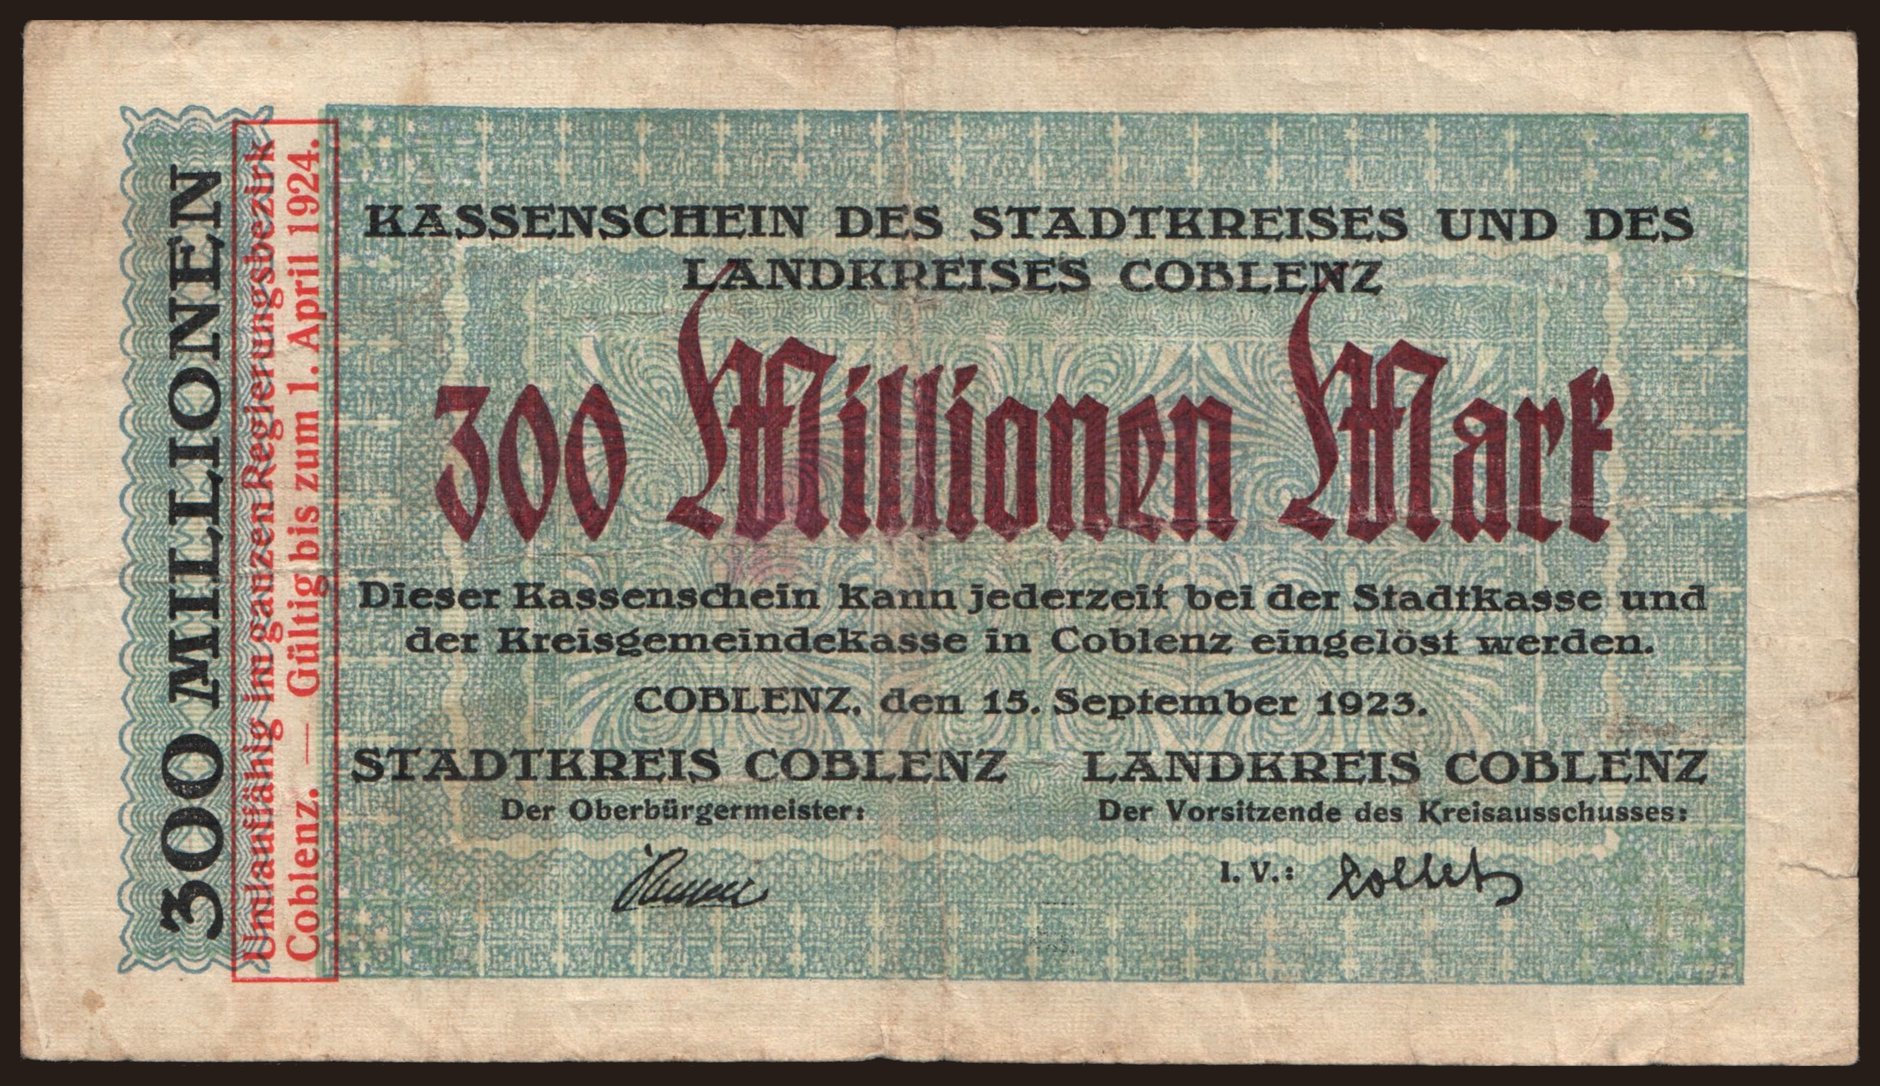 Coblenz/ Stadtkreis und Landkreis, 300.000.000 Mark, 1923